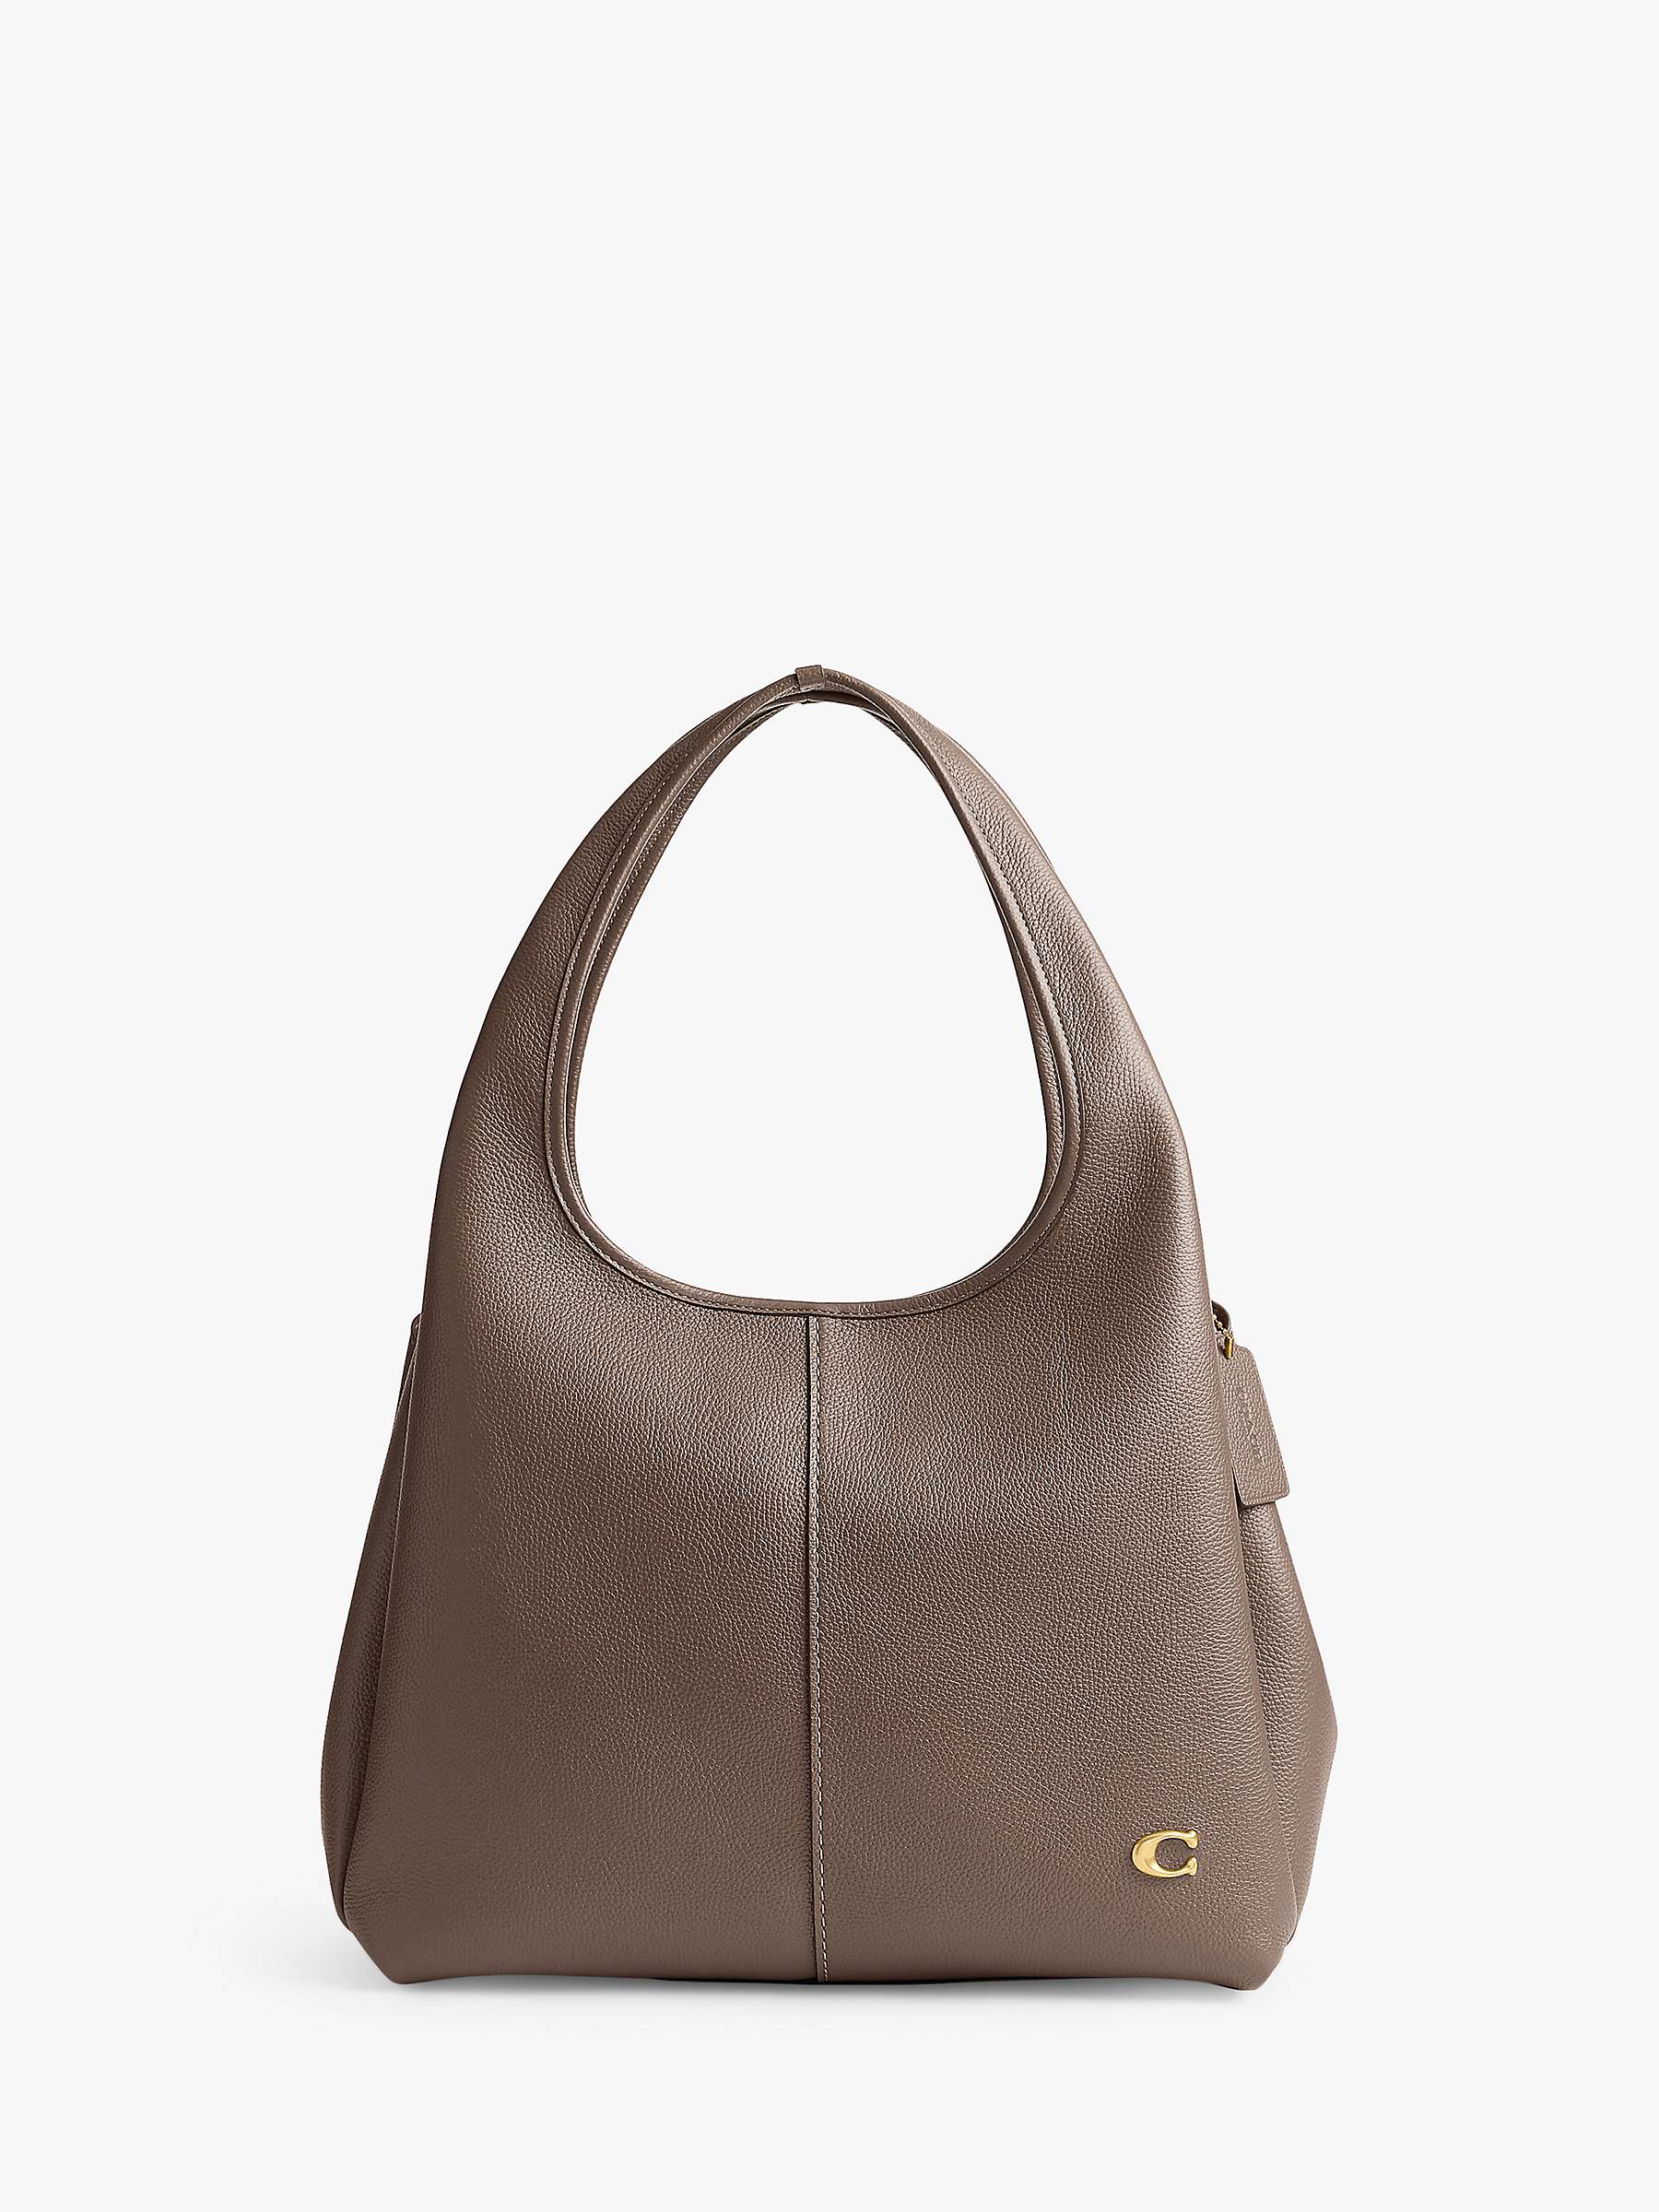 Buy Coach Lana Leather Shoulder Bag Online at johnlewis.com